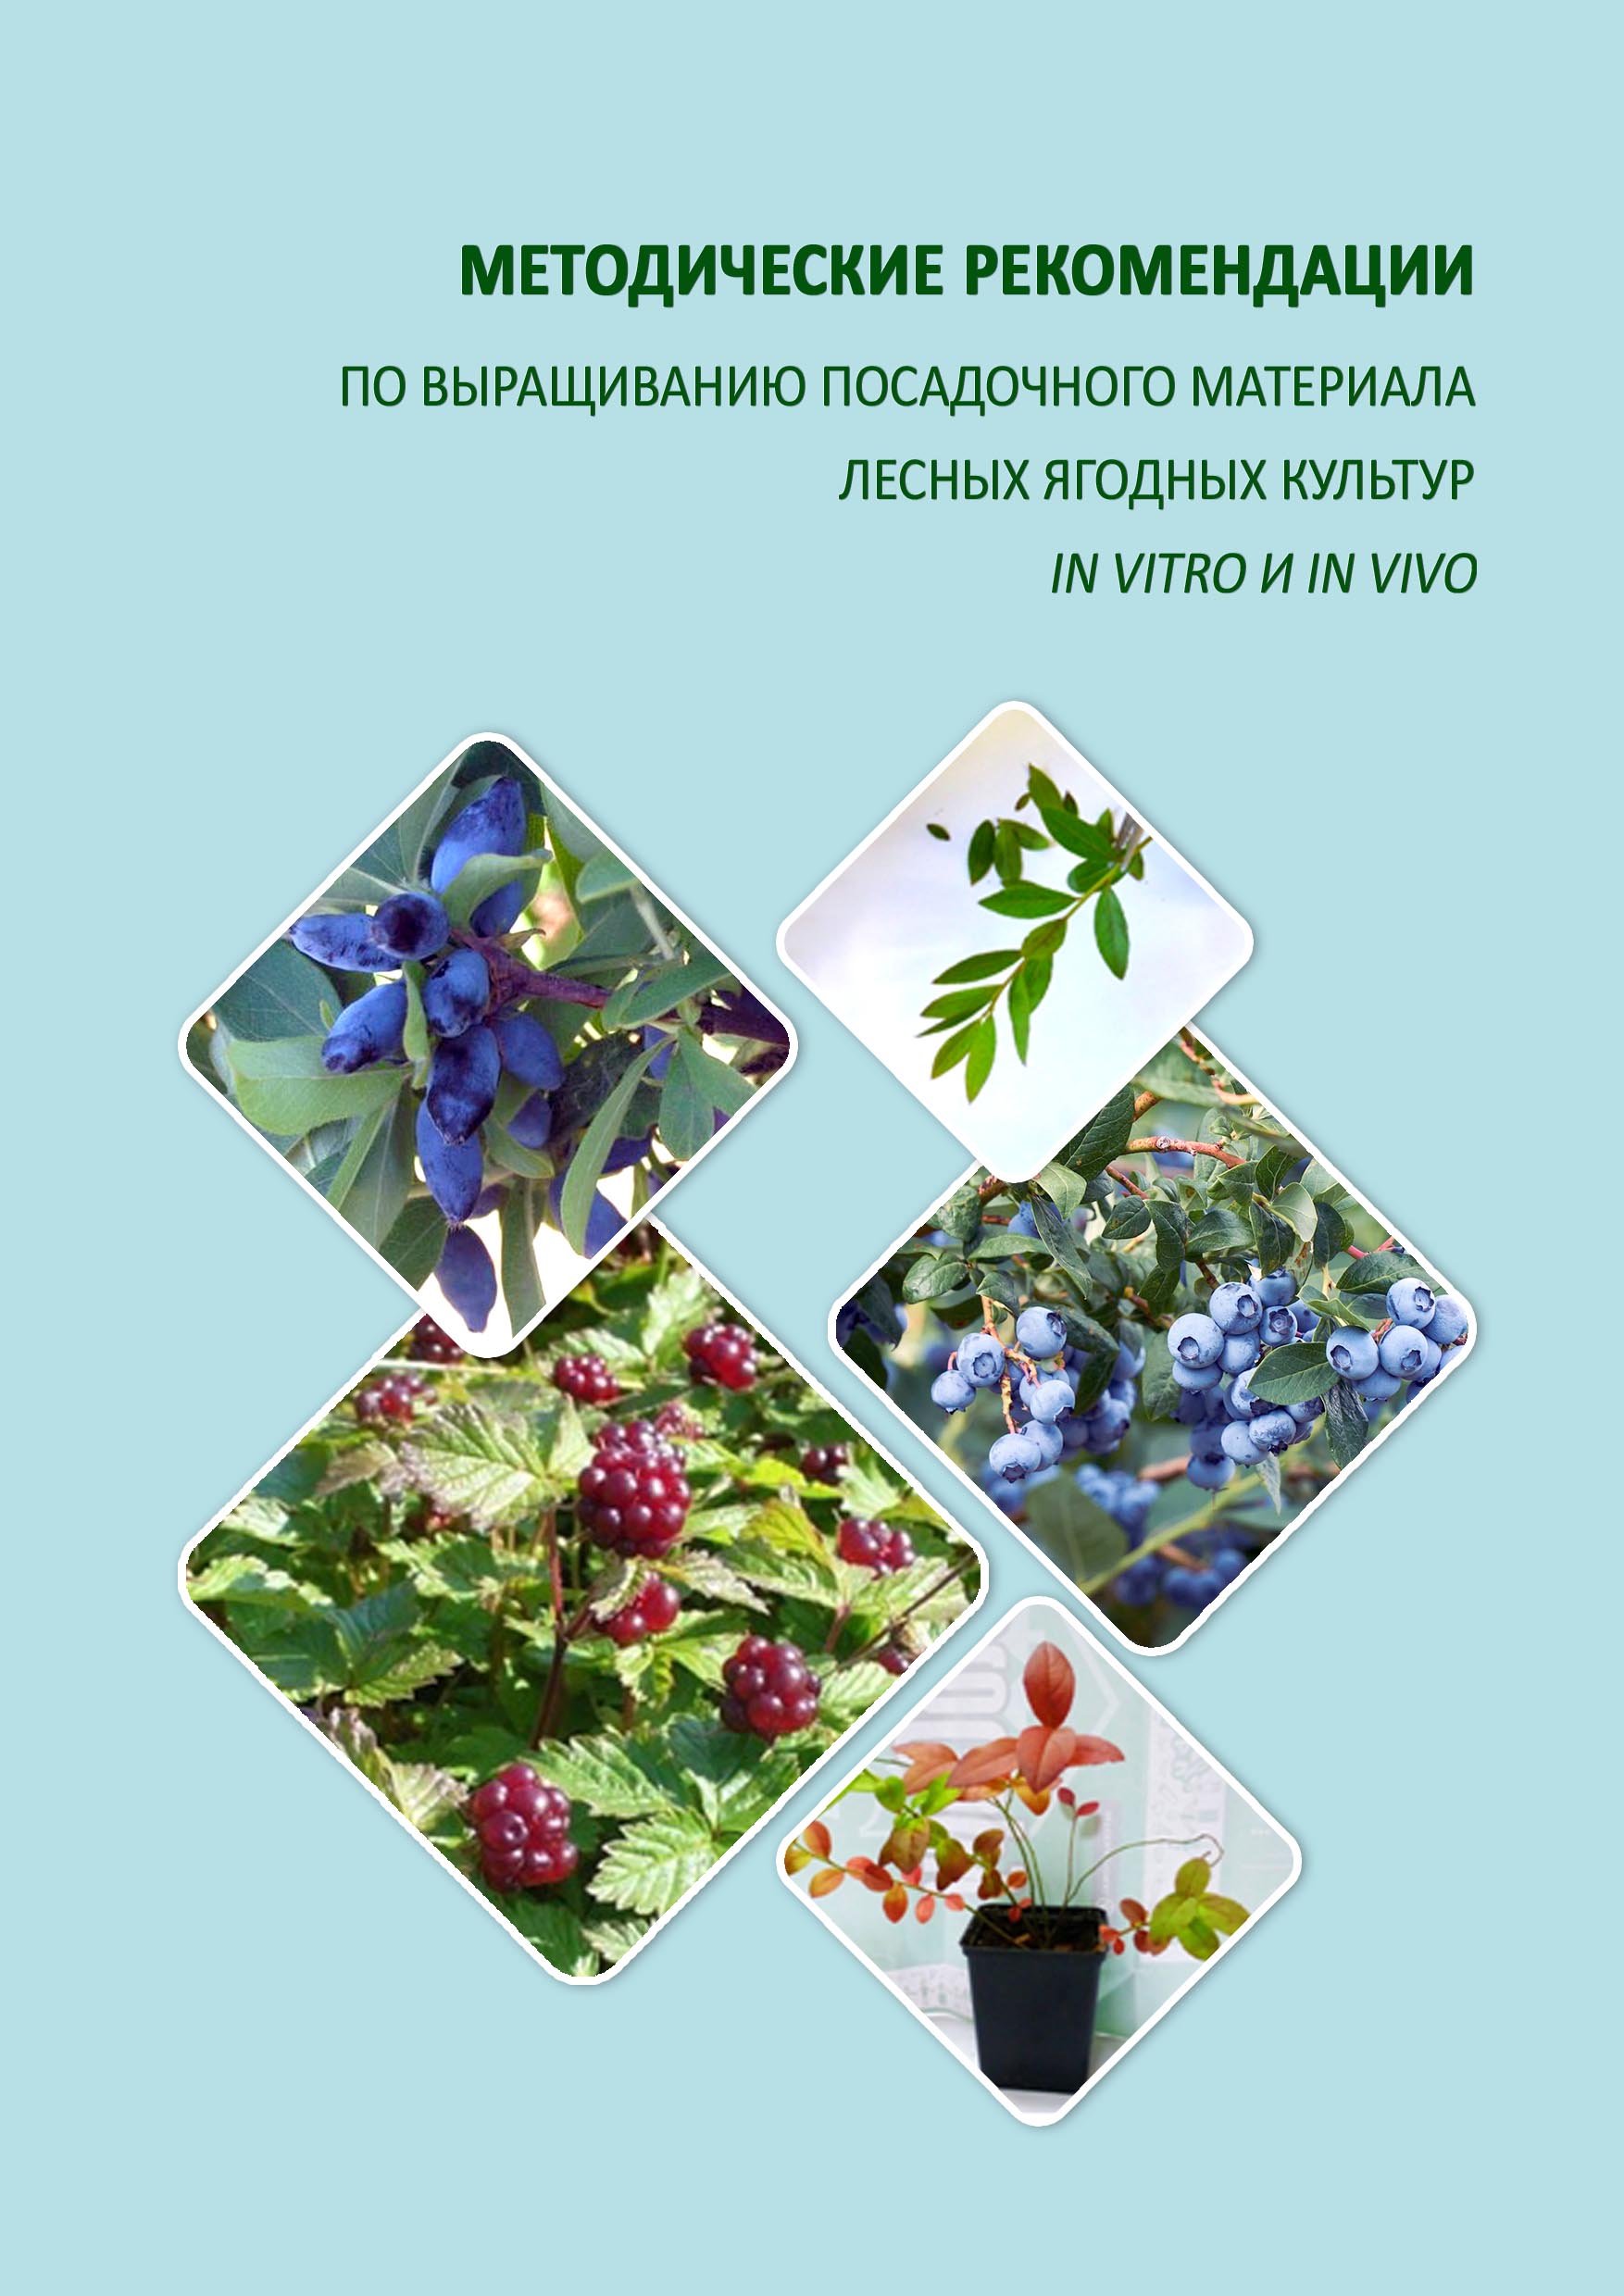 Методические рекомендации по выращиванию посадочного материала лесных ягодных культур in vitro и in vivo